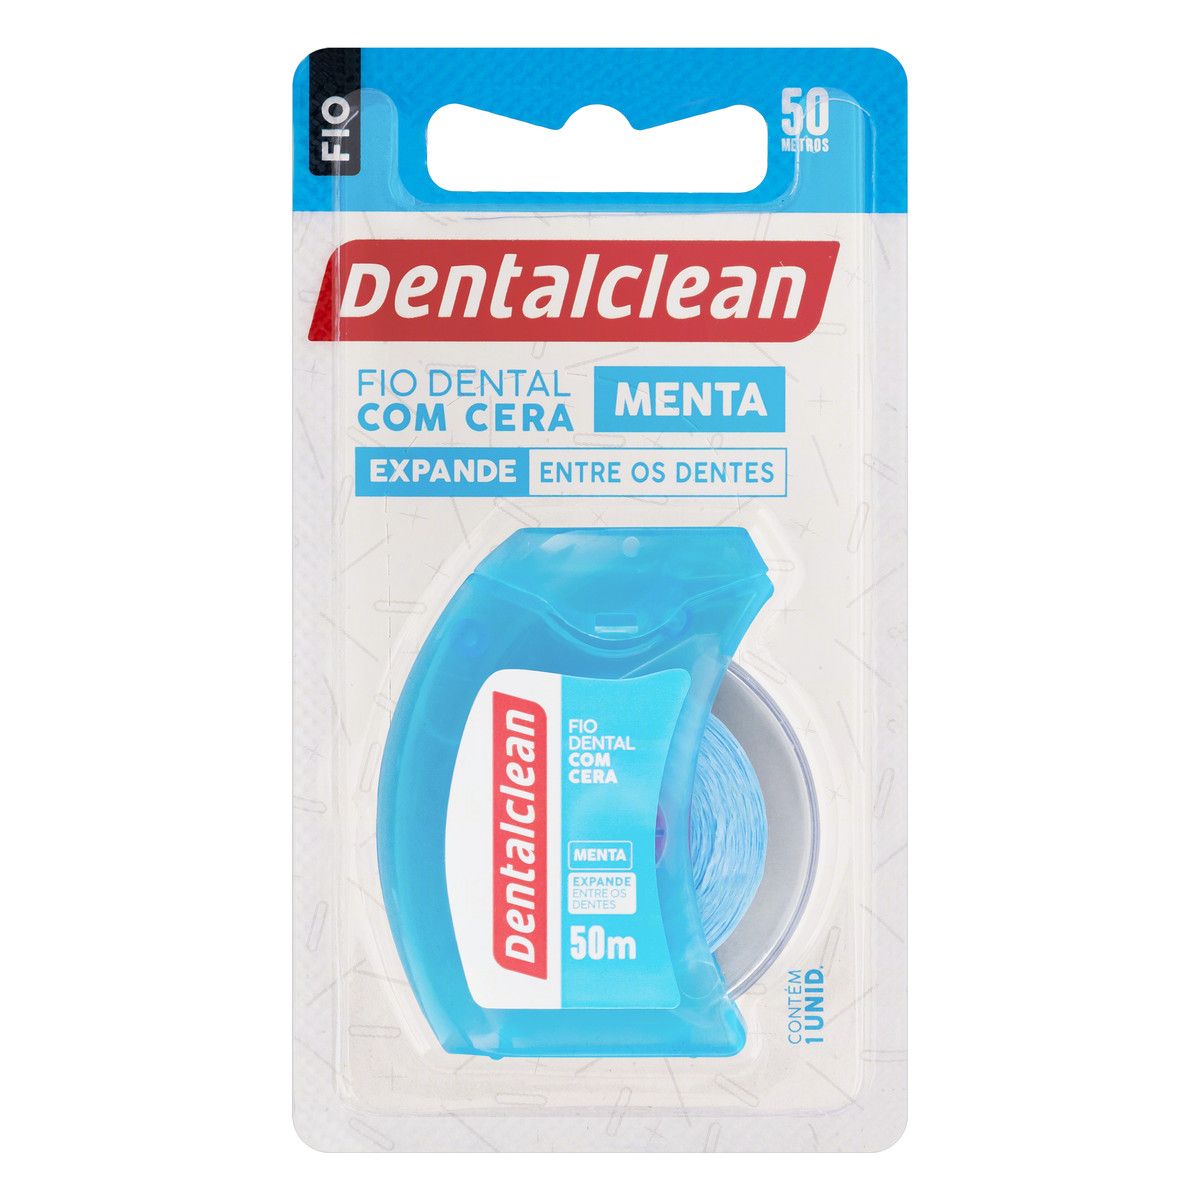 Fio Dental com Cera Menta Dentalclean 50m image number 0